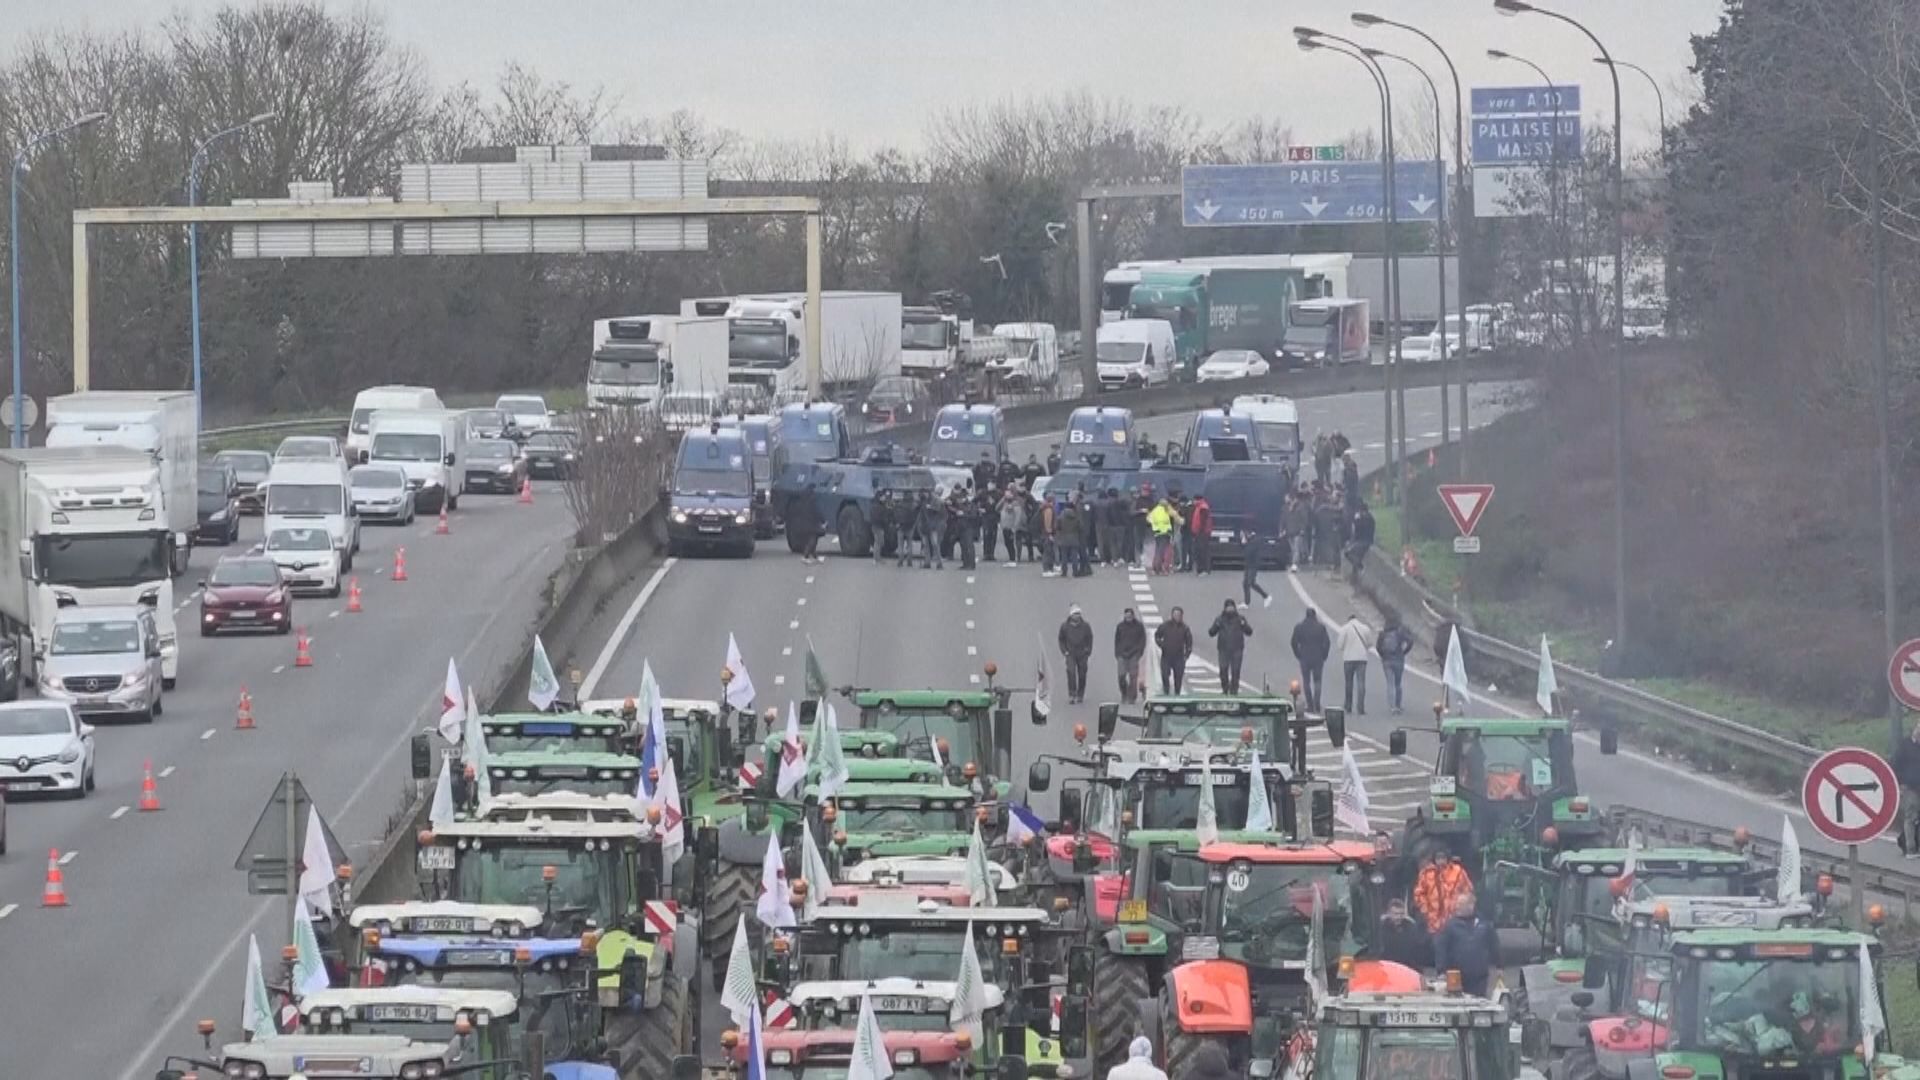 歐洲多國農民示威抗議歐盟新規定 歐盟擬調整措施平息民憤